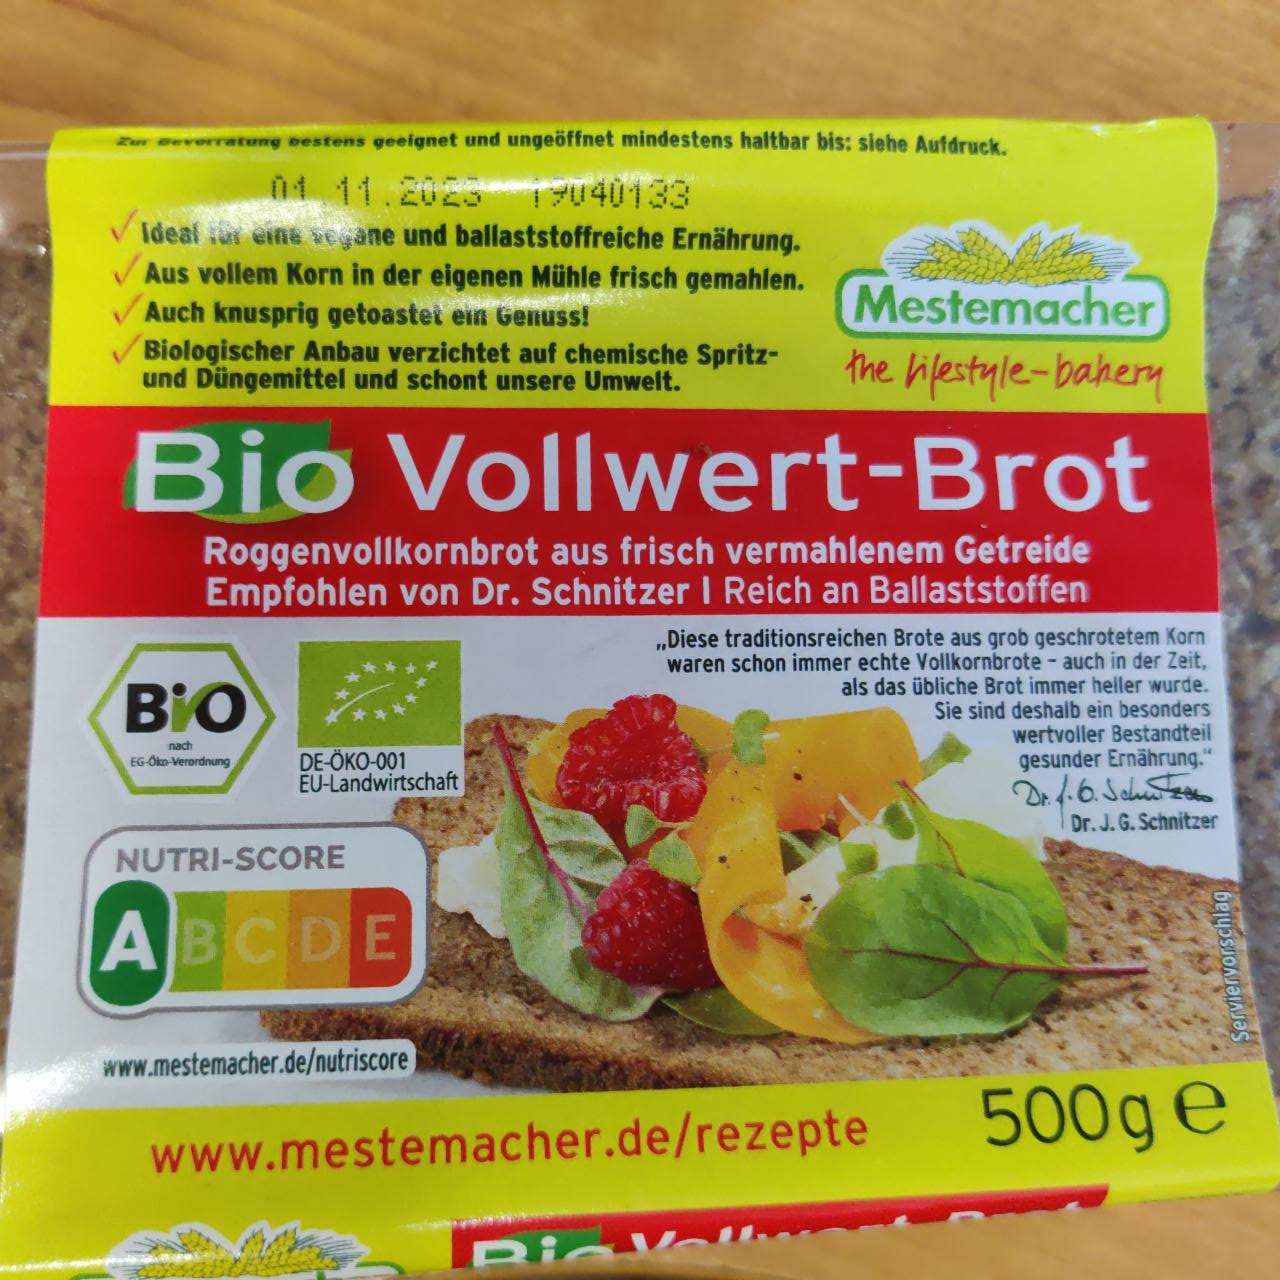 Fotografie - Bio Vollwert-Brot Mestemacher